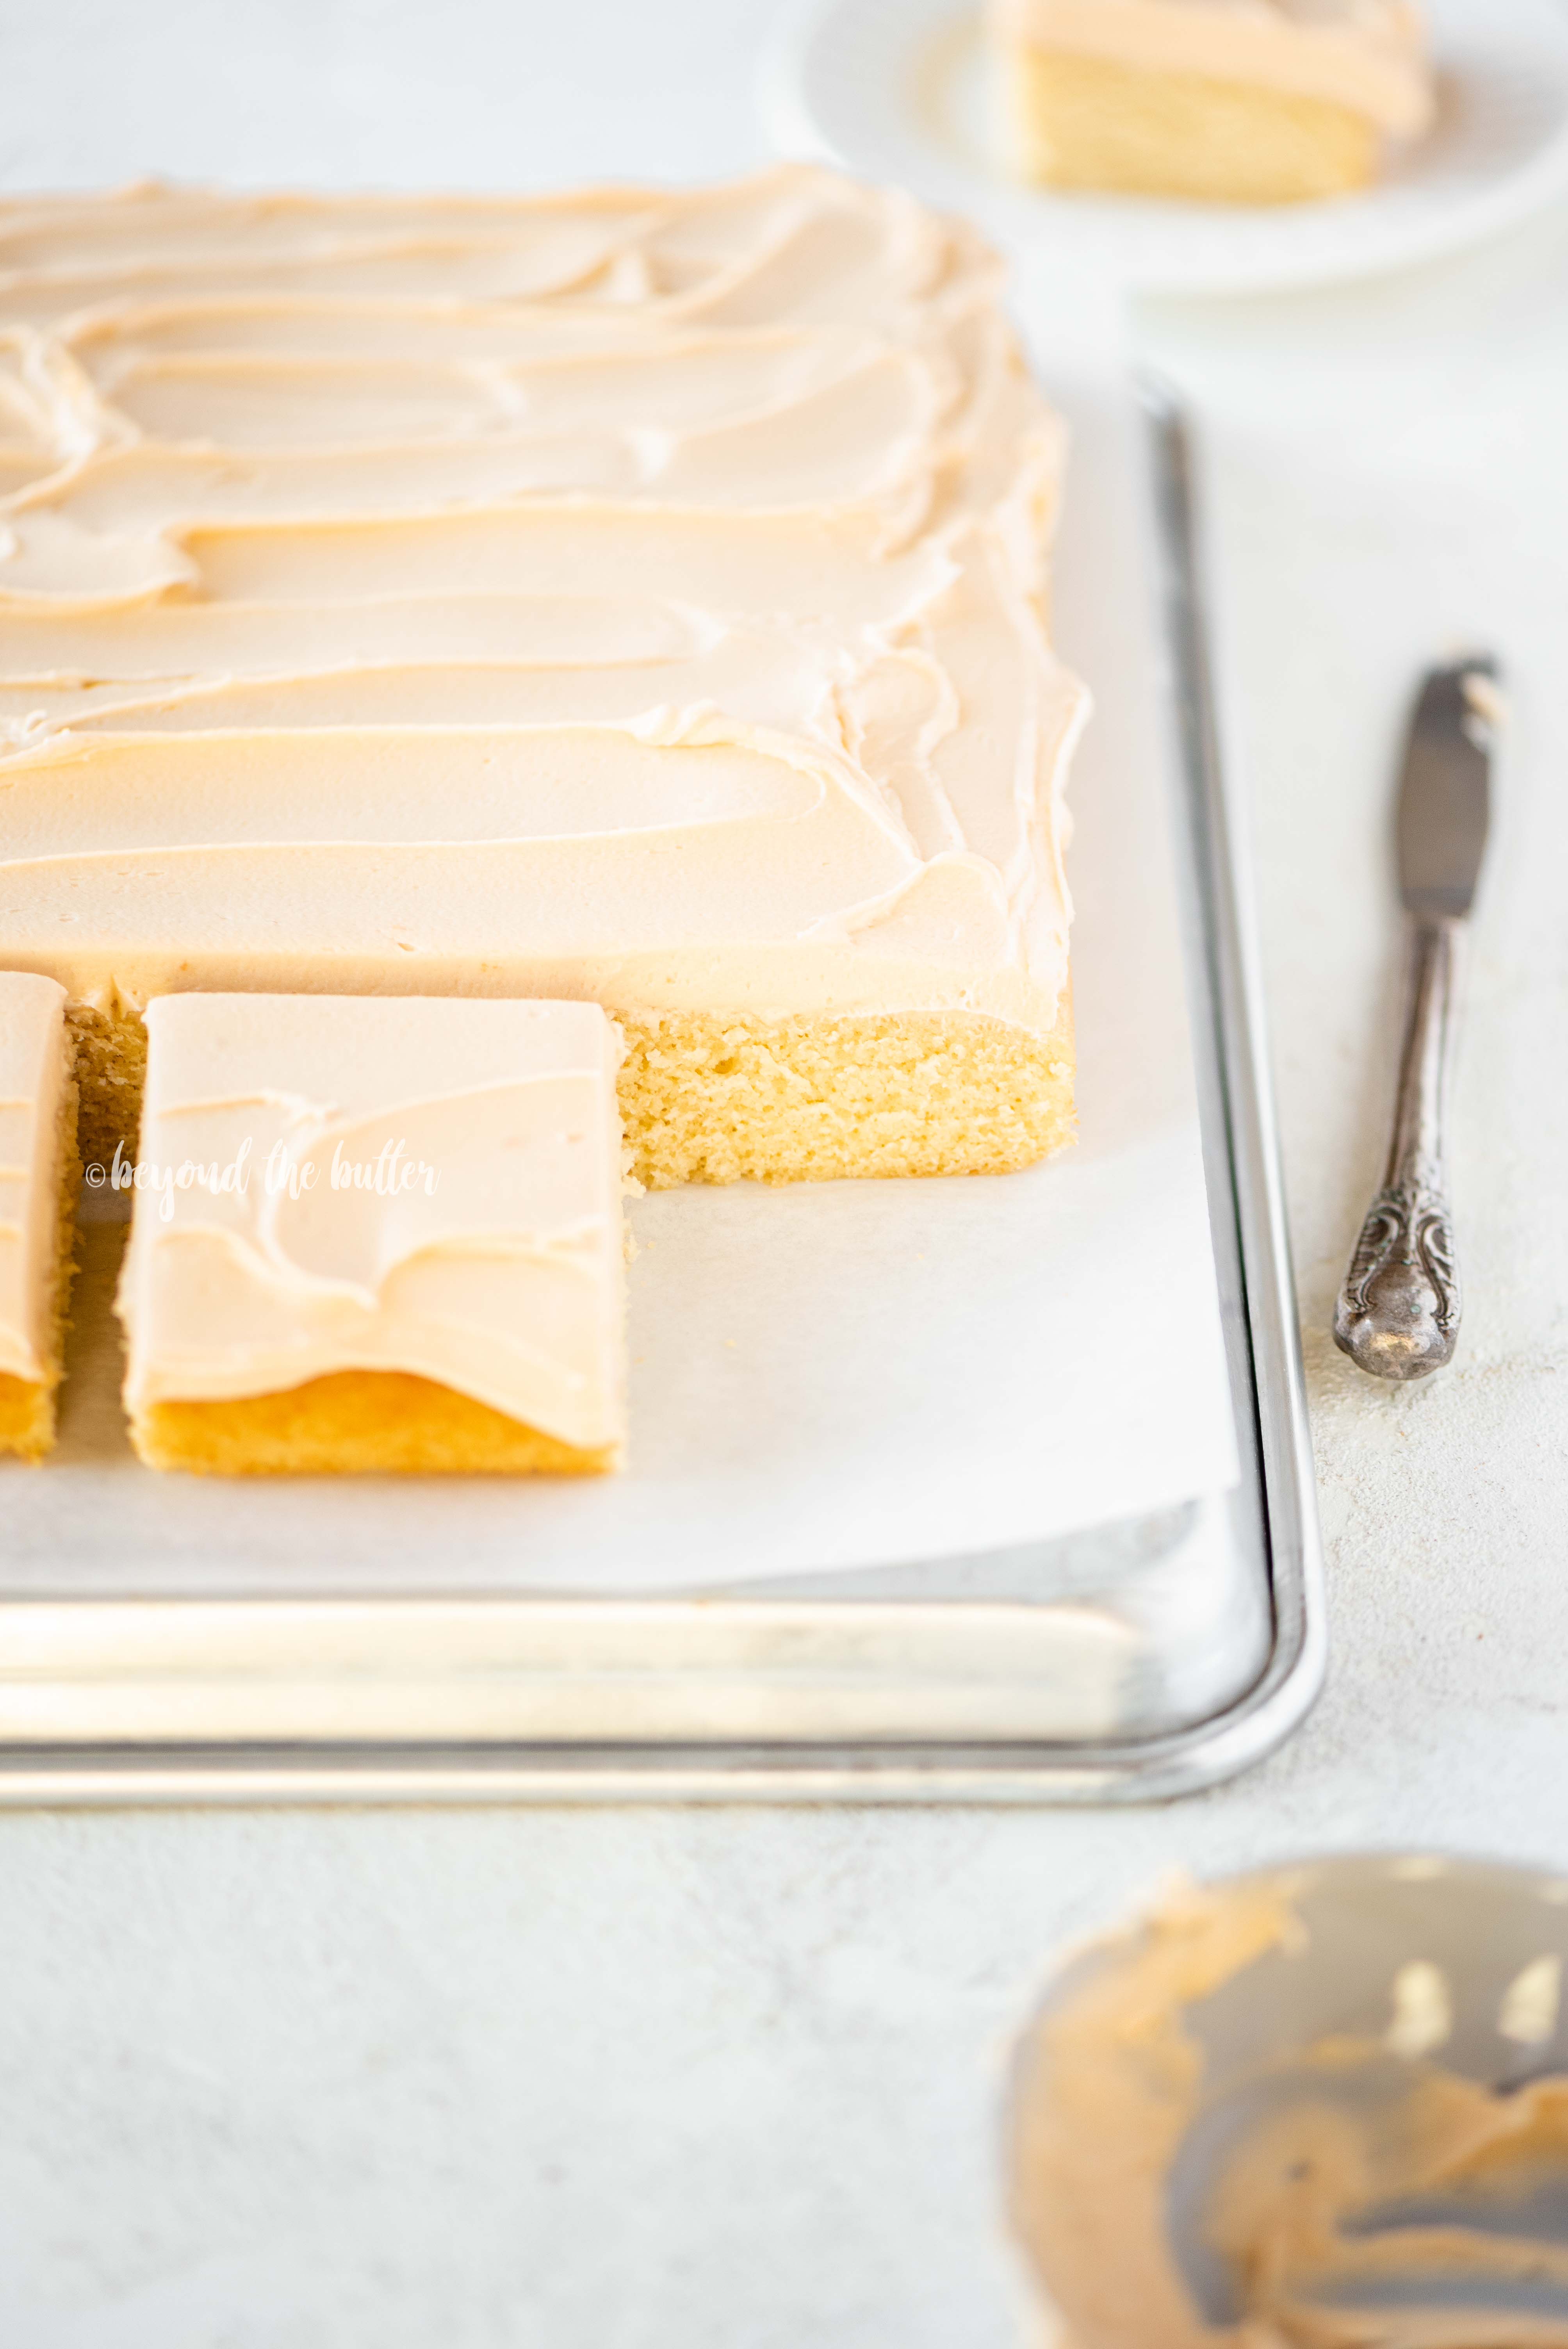 Homemade Butterscotch Krimpet Sheet Cake recipe | All Images © Beyond the Butter, LLC